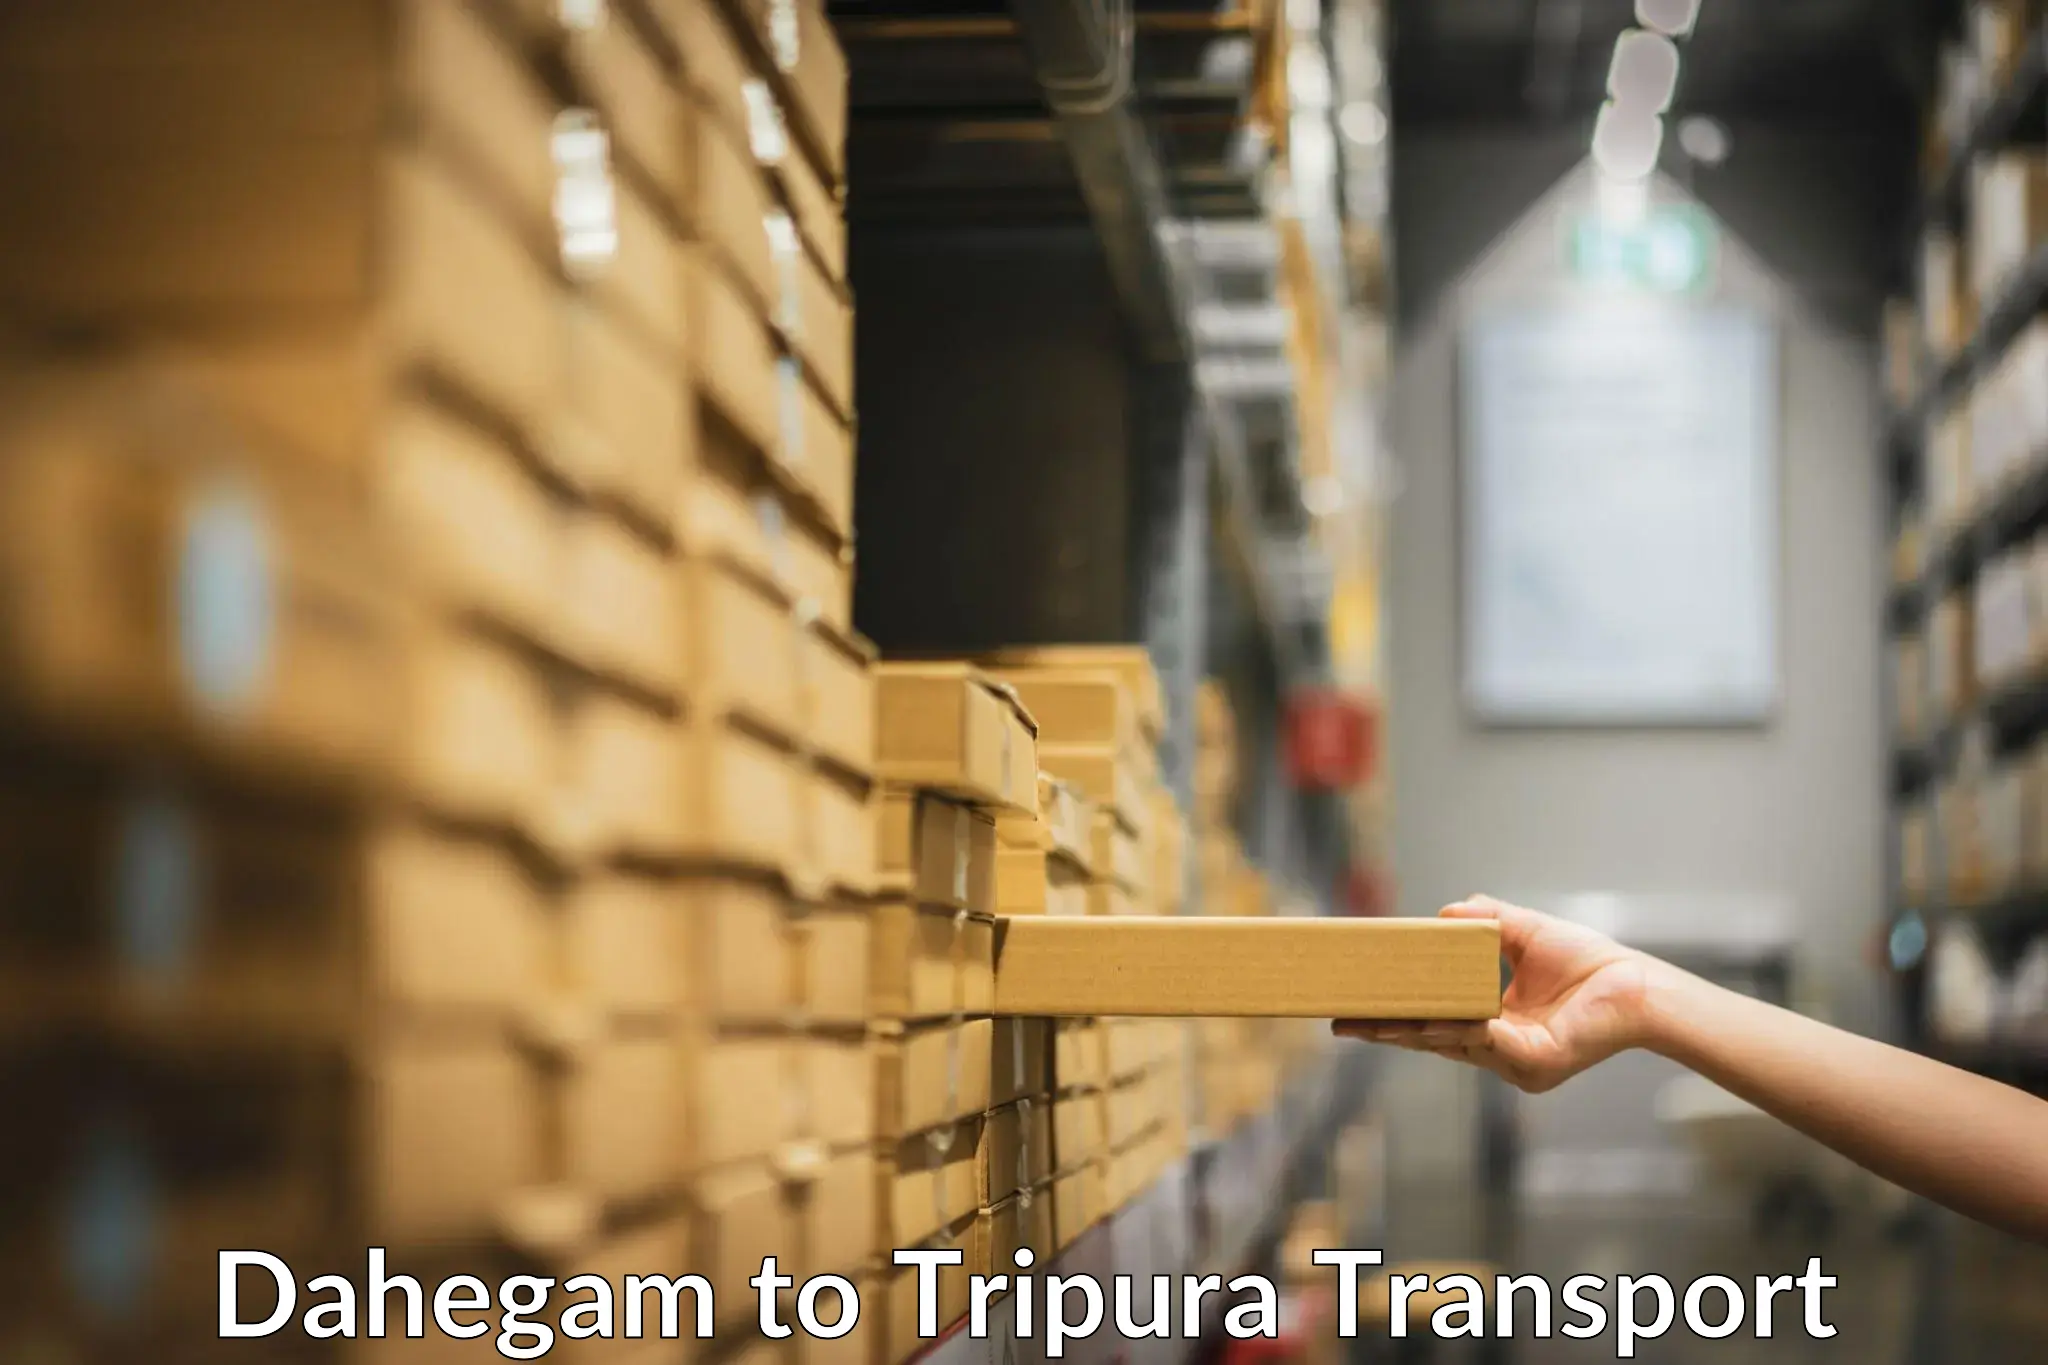 Daily transport service Dahegam to Tripura